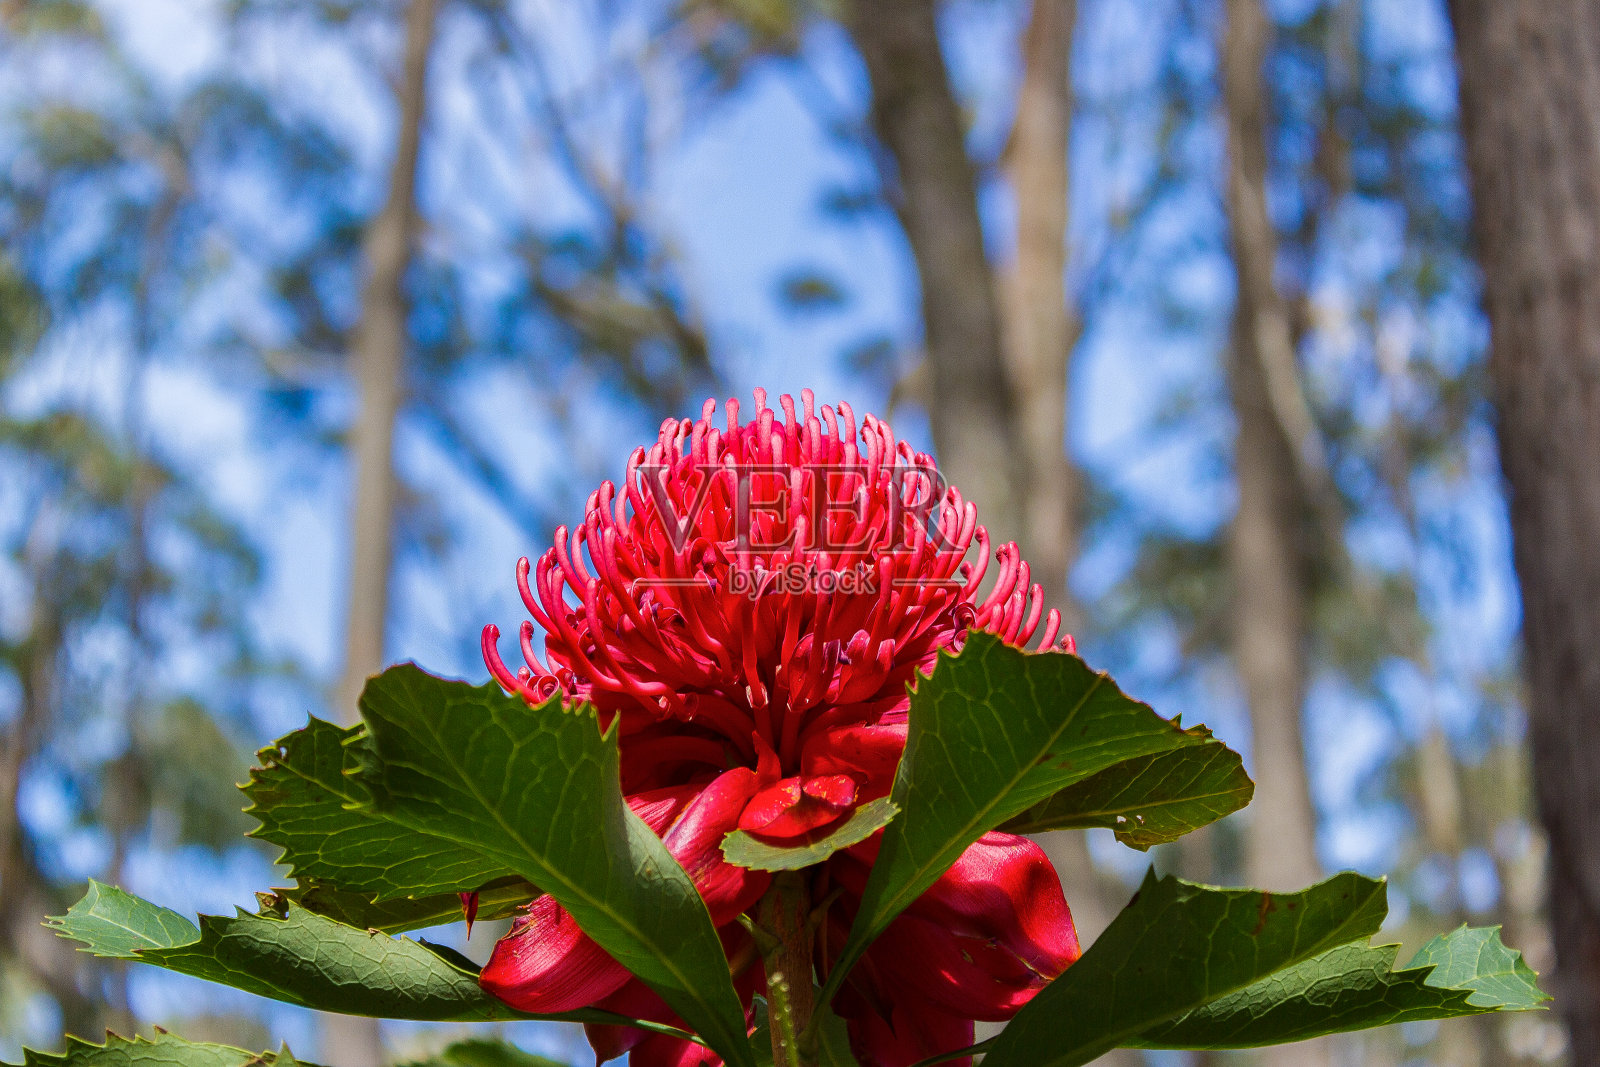 澳大利亚Camewarra山的五彩秋花照片摄影图片